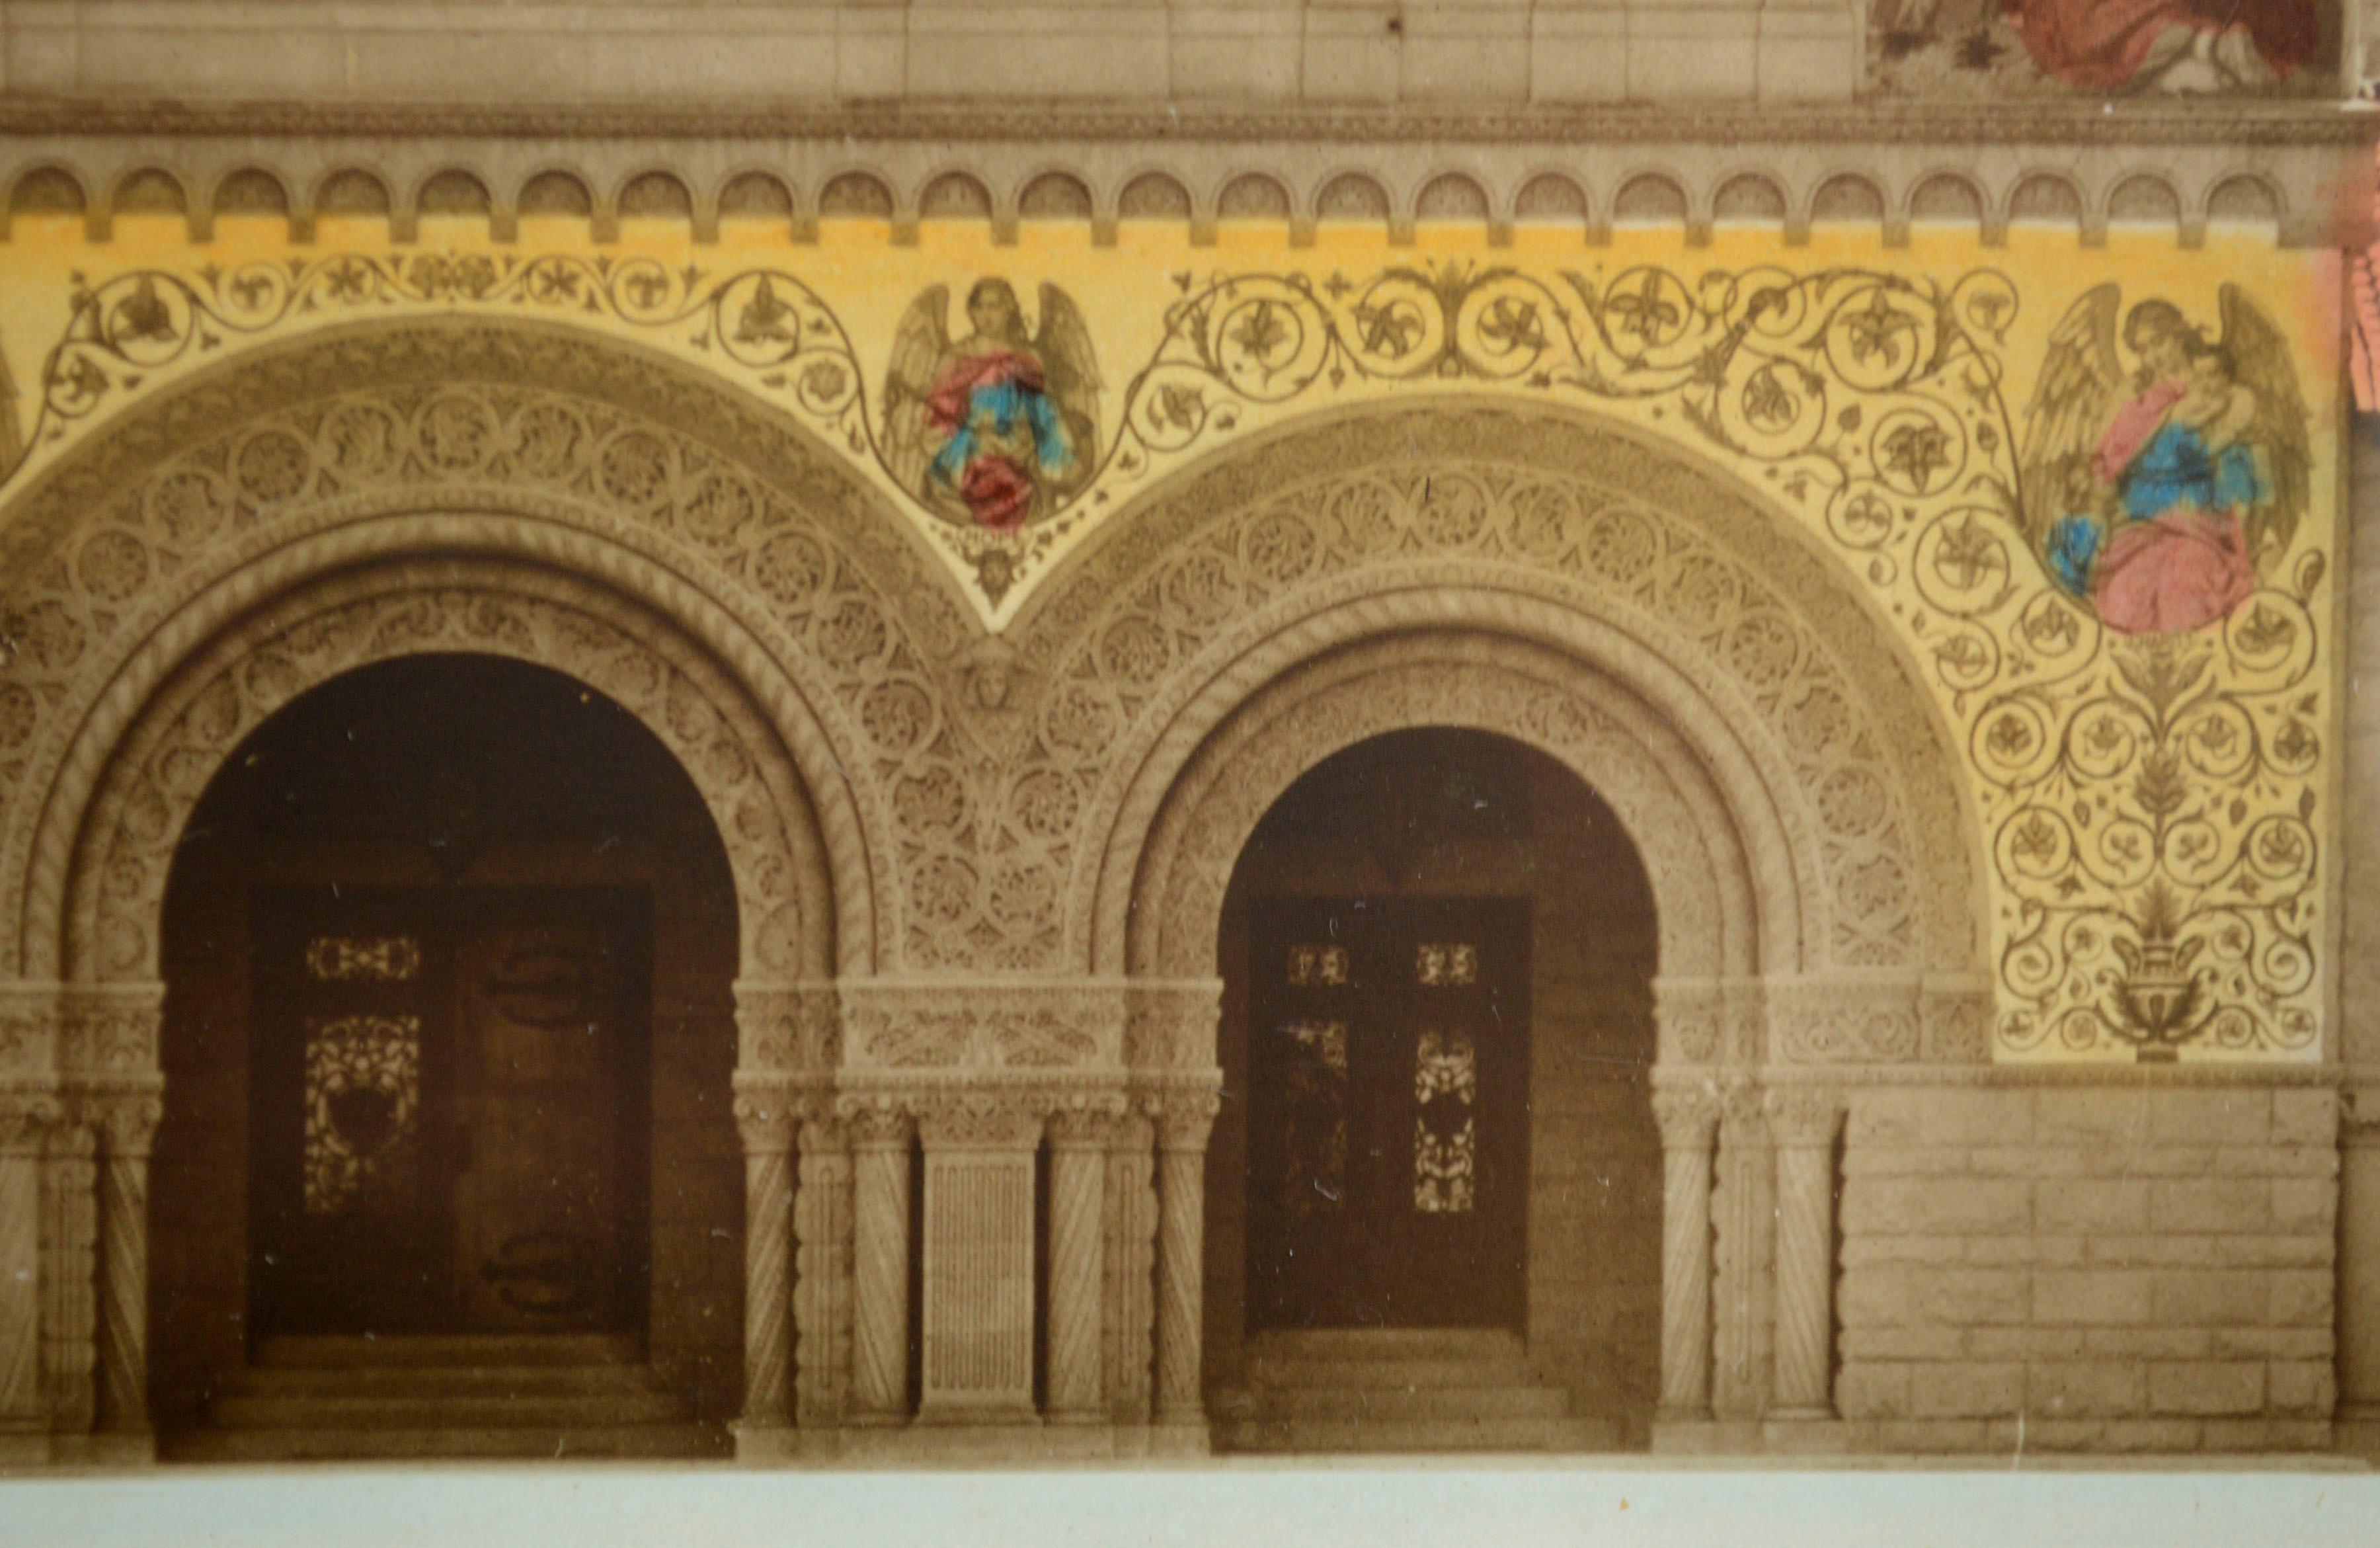 Photographie de paysage en couleur, finement détaillée et teintée à la main, de la Stanford Memorial Church's, réalisée par Bear Photo Service (américain, années 1930). Le photographe est inconnu. Numéroté 904 en bas à droite. Présenté dans un cadre